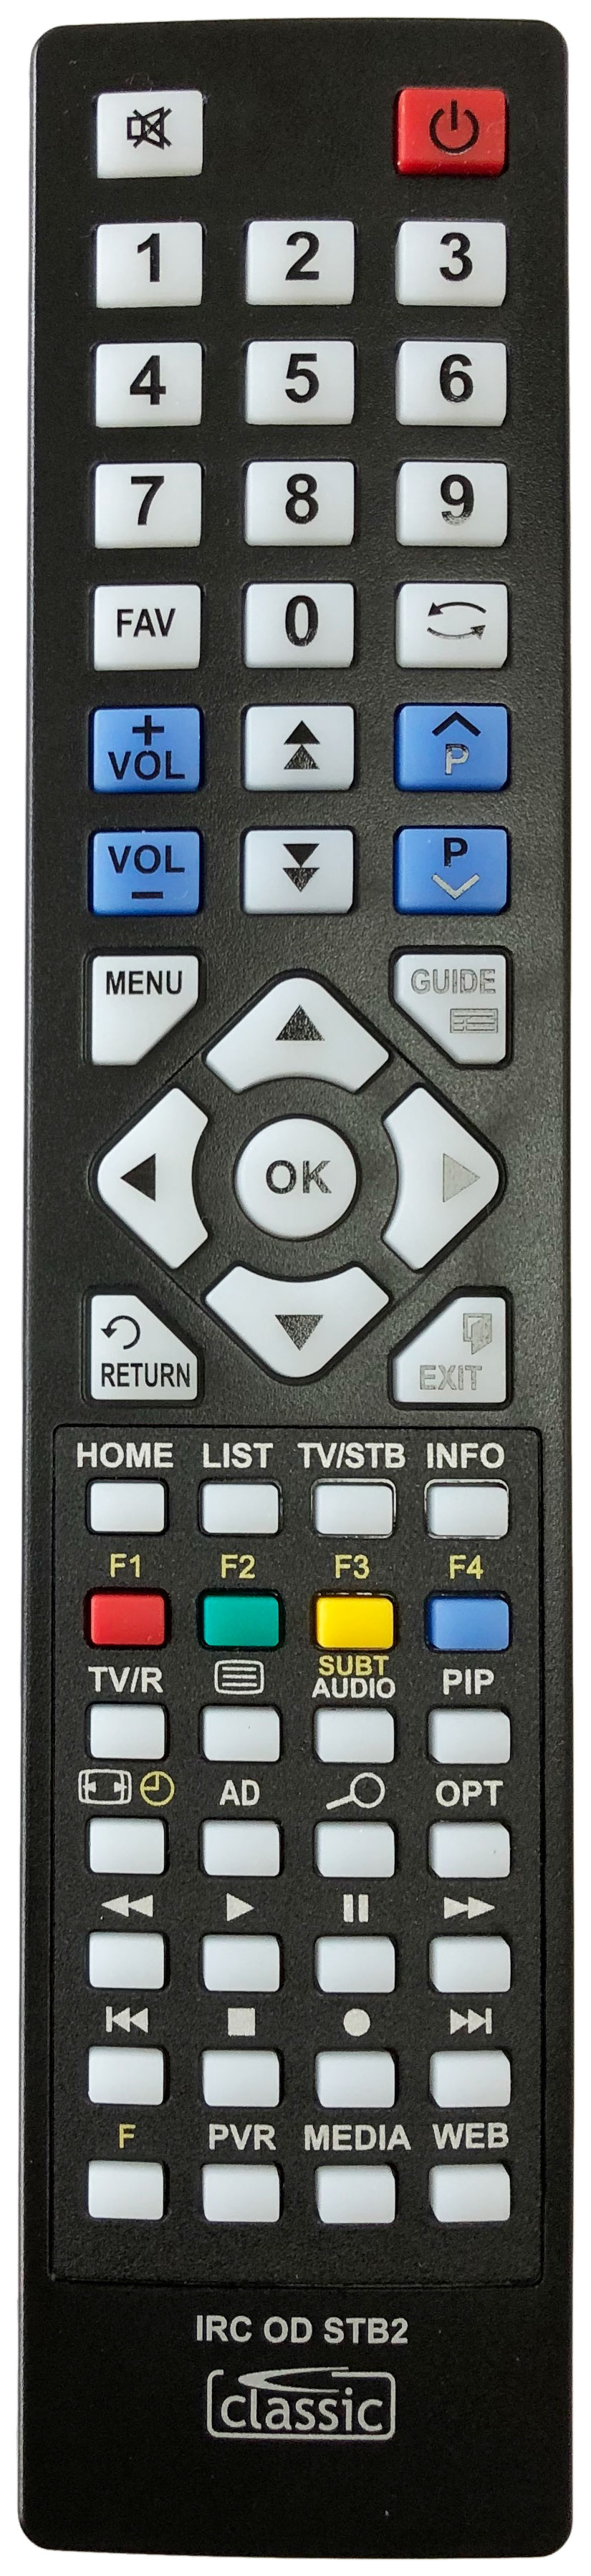 HUMAX DTR-T2000 Remote Control Alternative